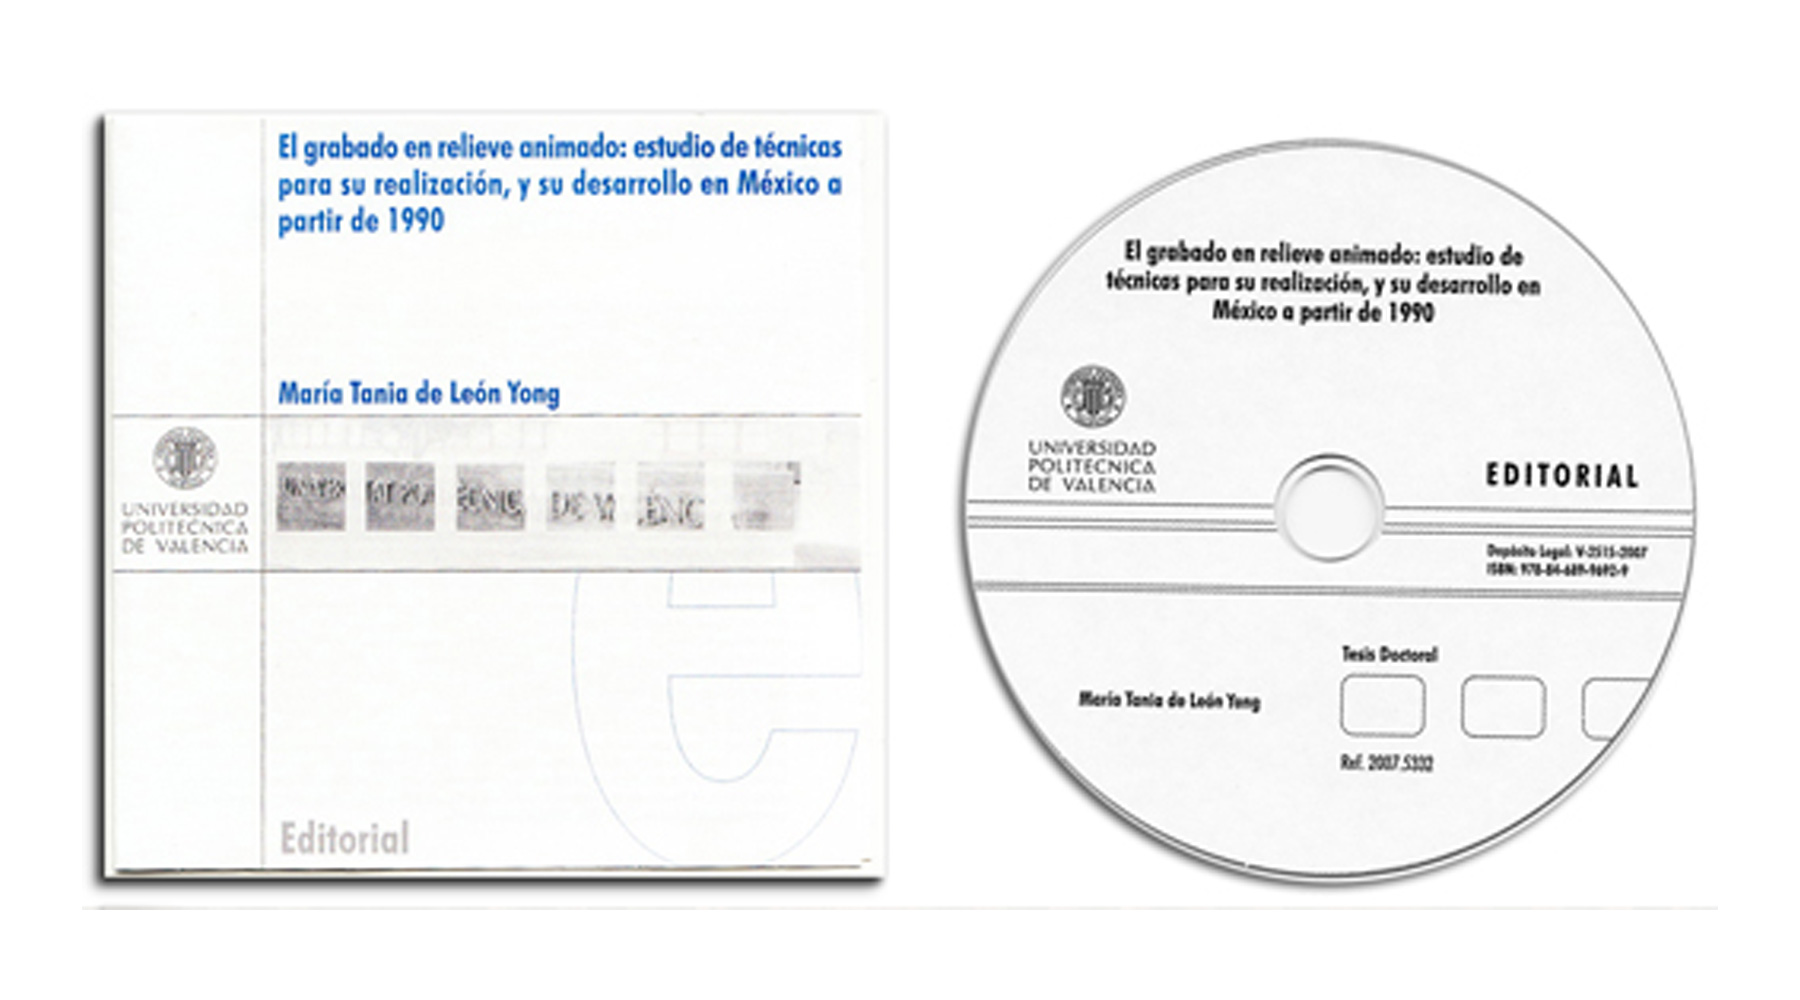 El grabado en relieve animado: técnicas para su realización y su desarrollo en México a partir de 1990